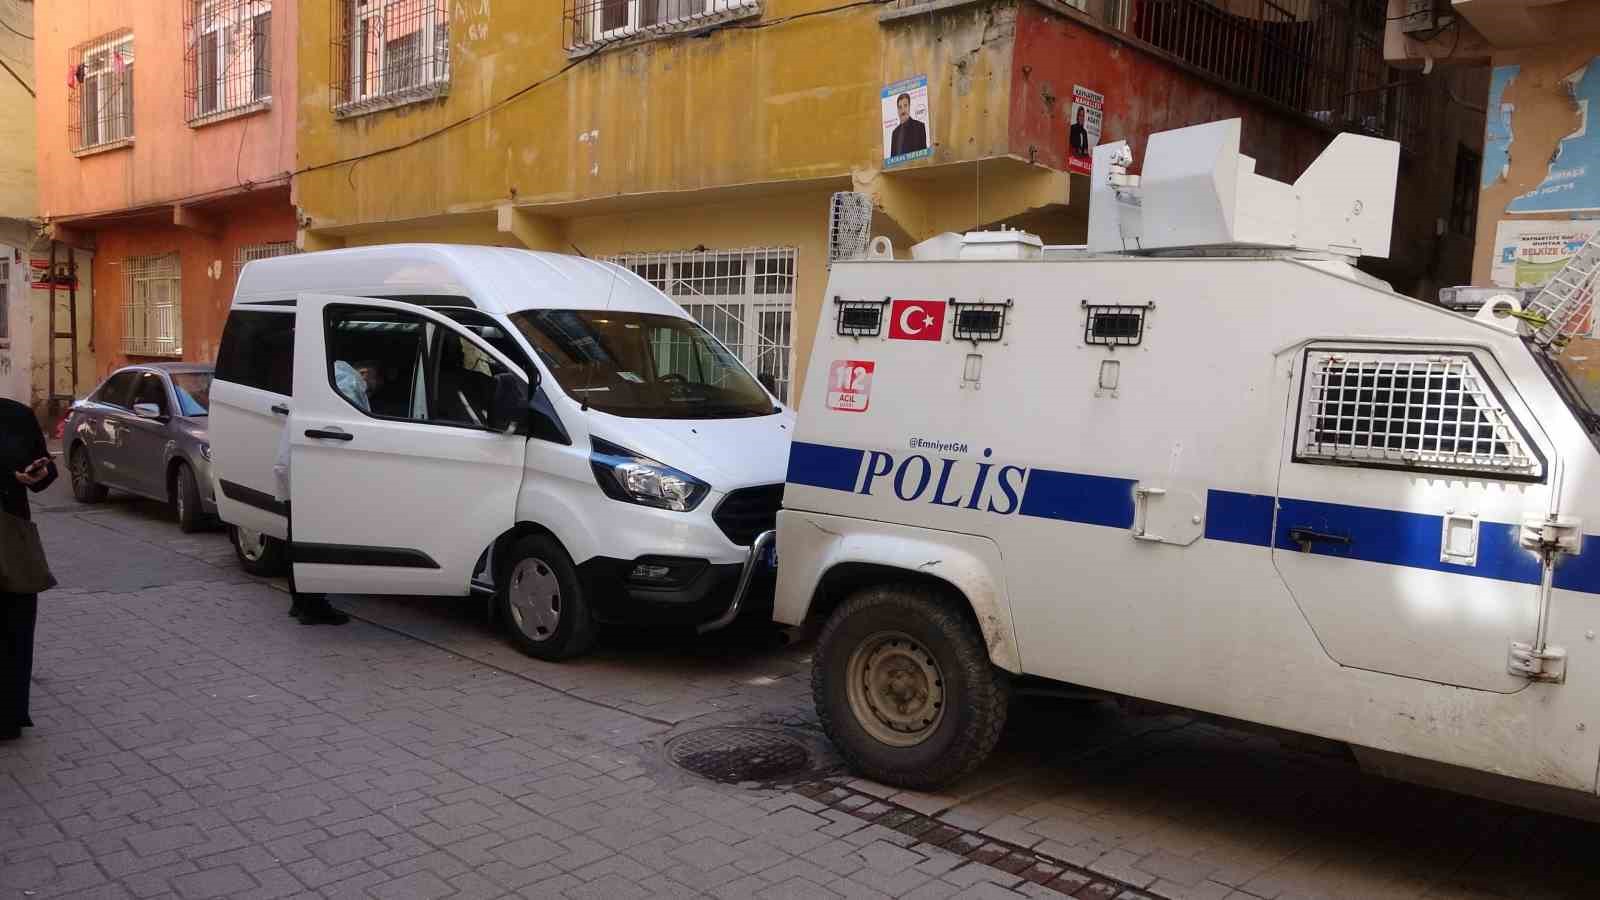 Diyarbakır’da yasak aşk cinayeti: Eşini ve sevgilisini öldürdü
